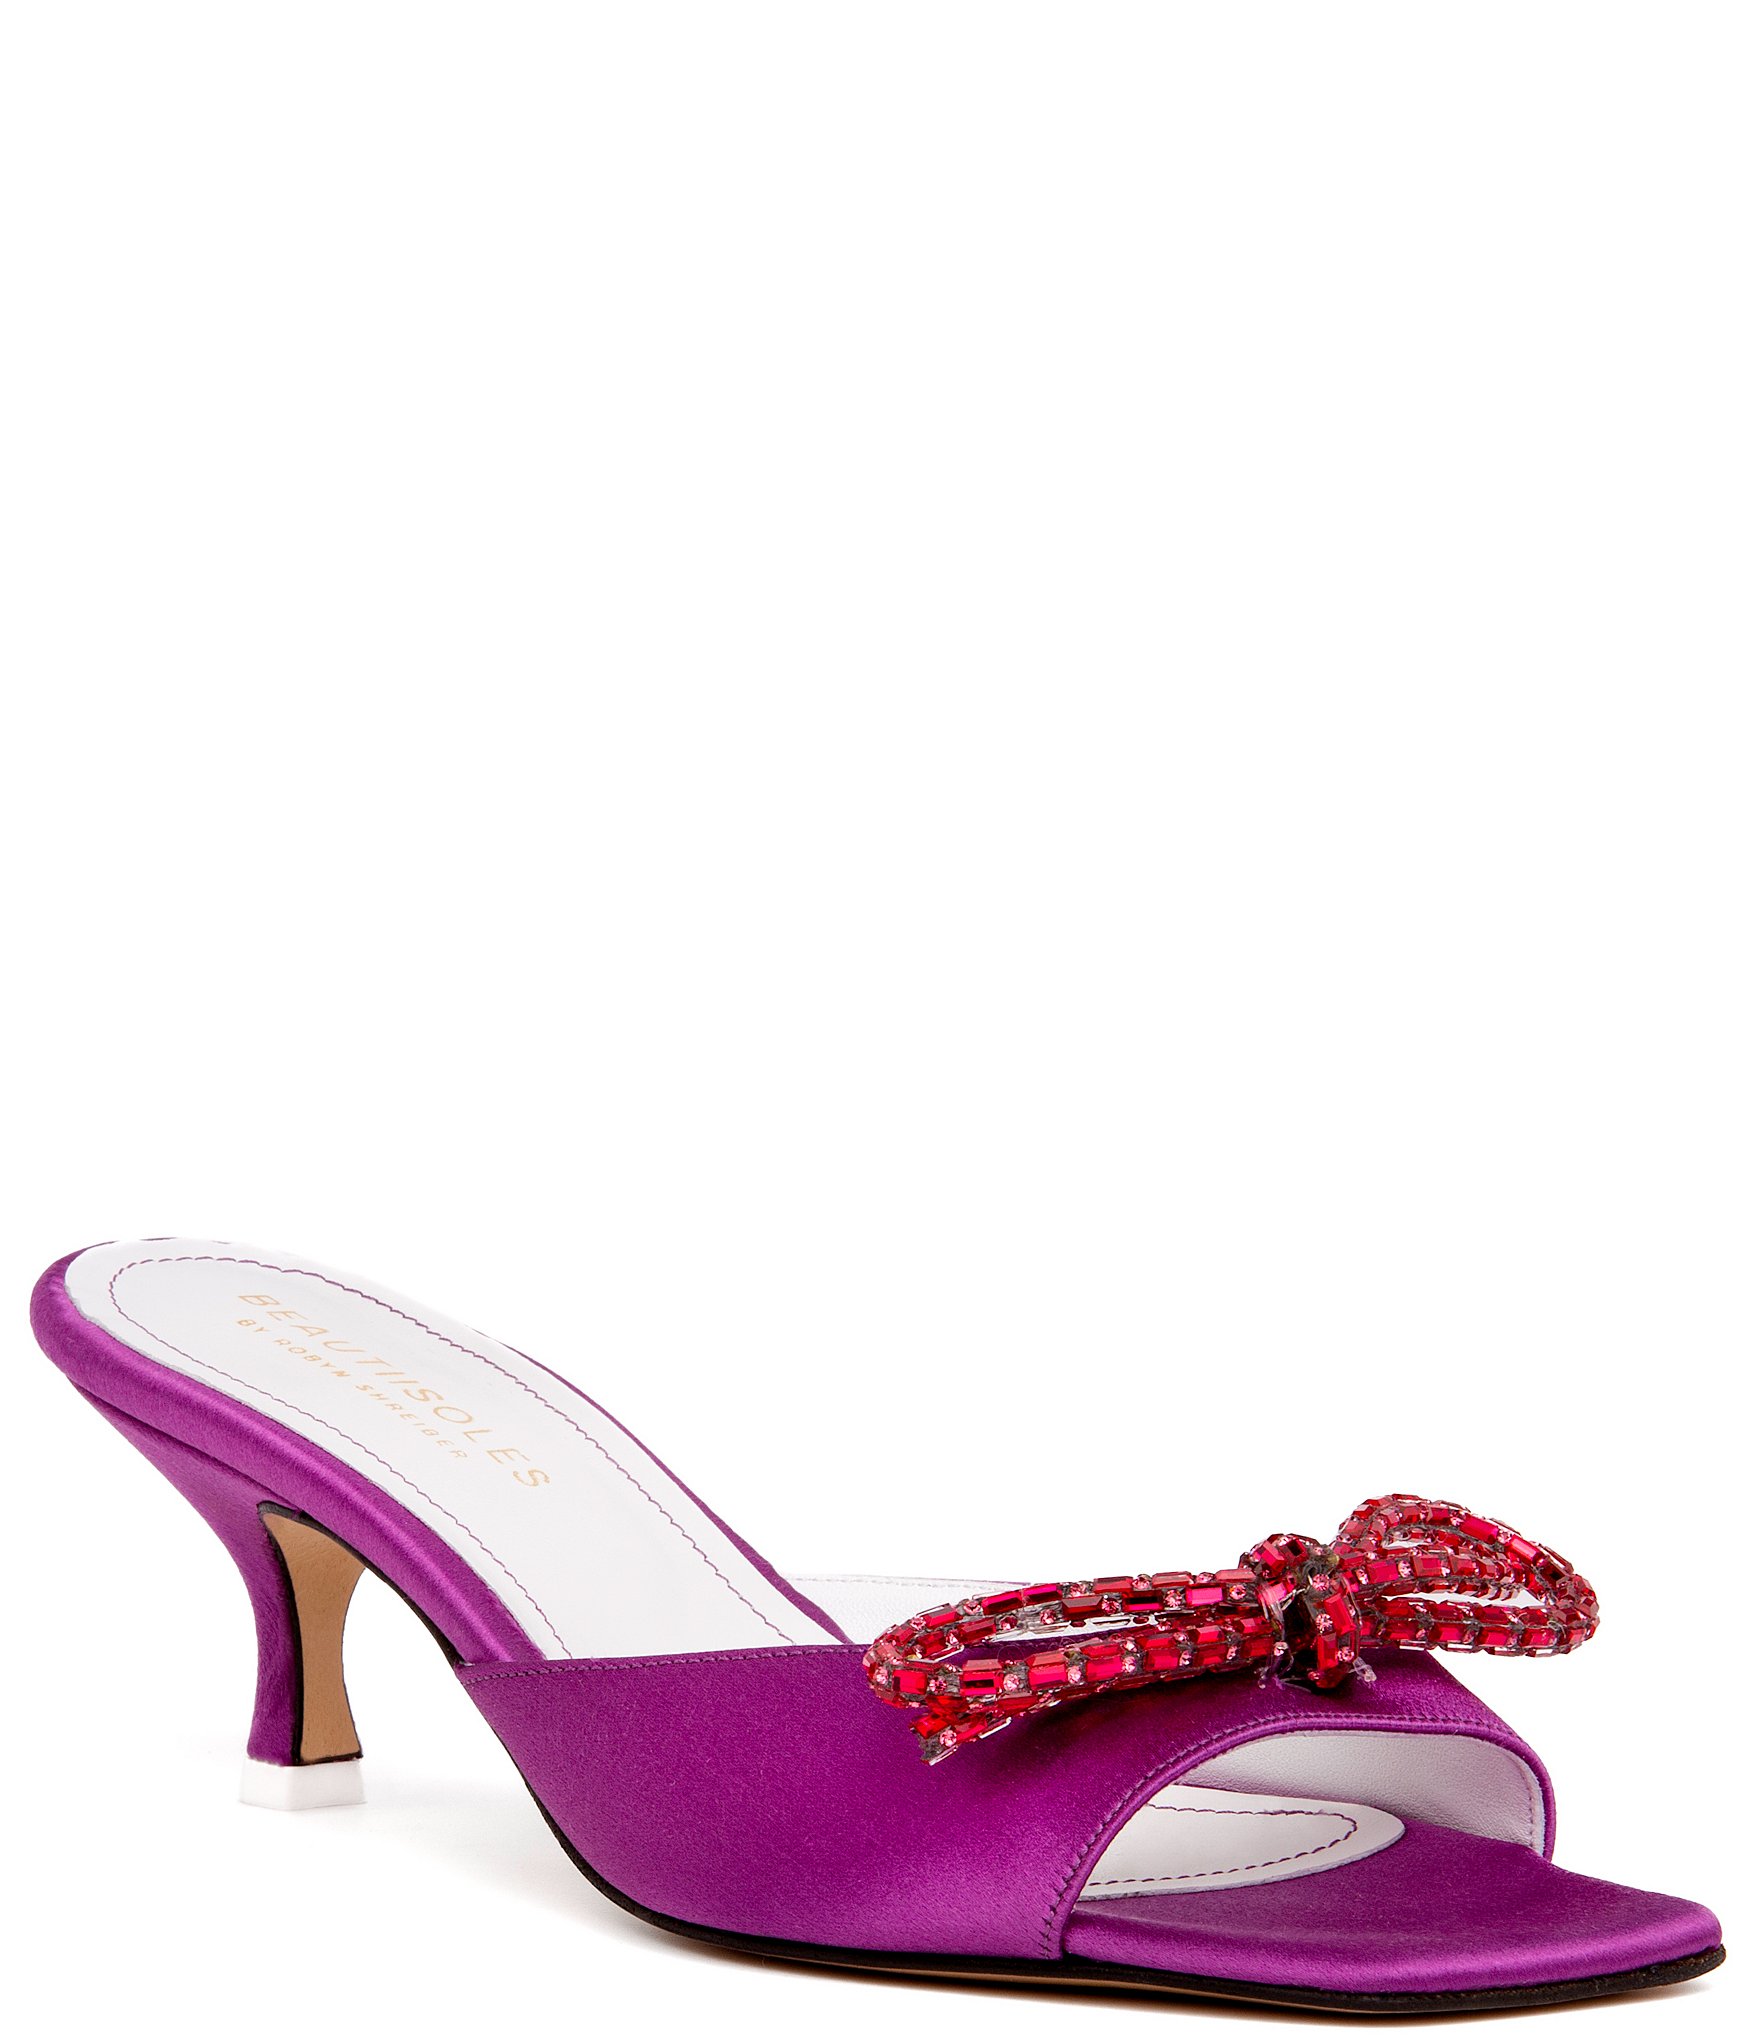 BEAUTIISOLES Eva Satin Rhinestone Embellished Bow Slide Dress Sandals ...